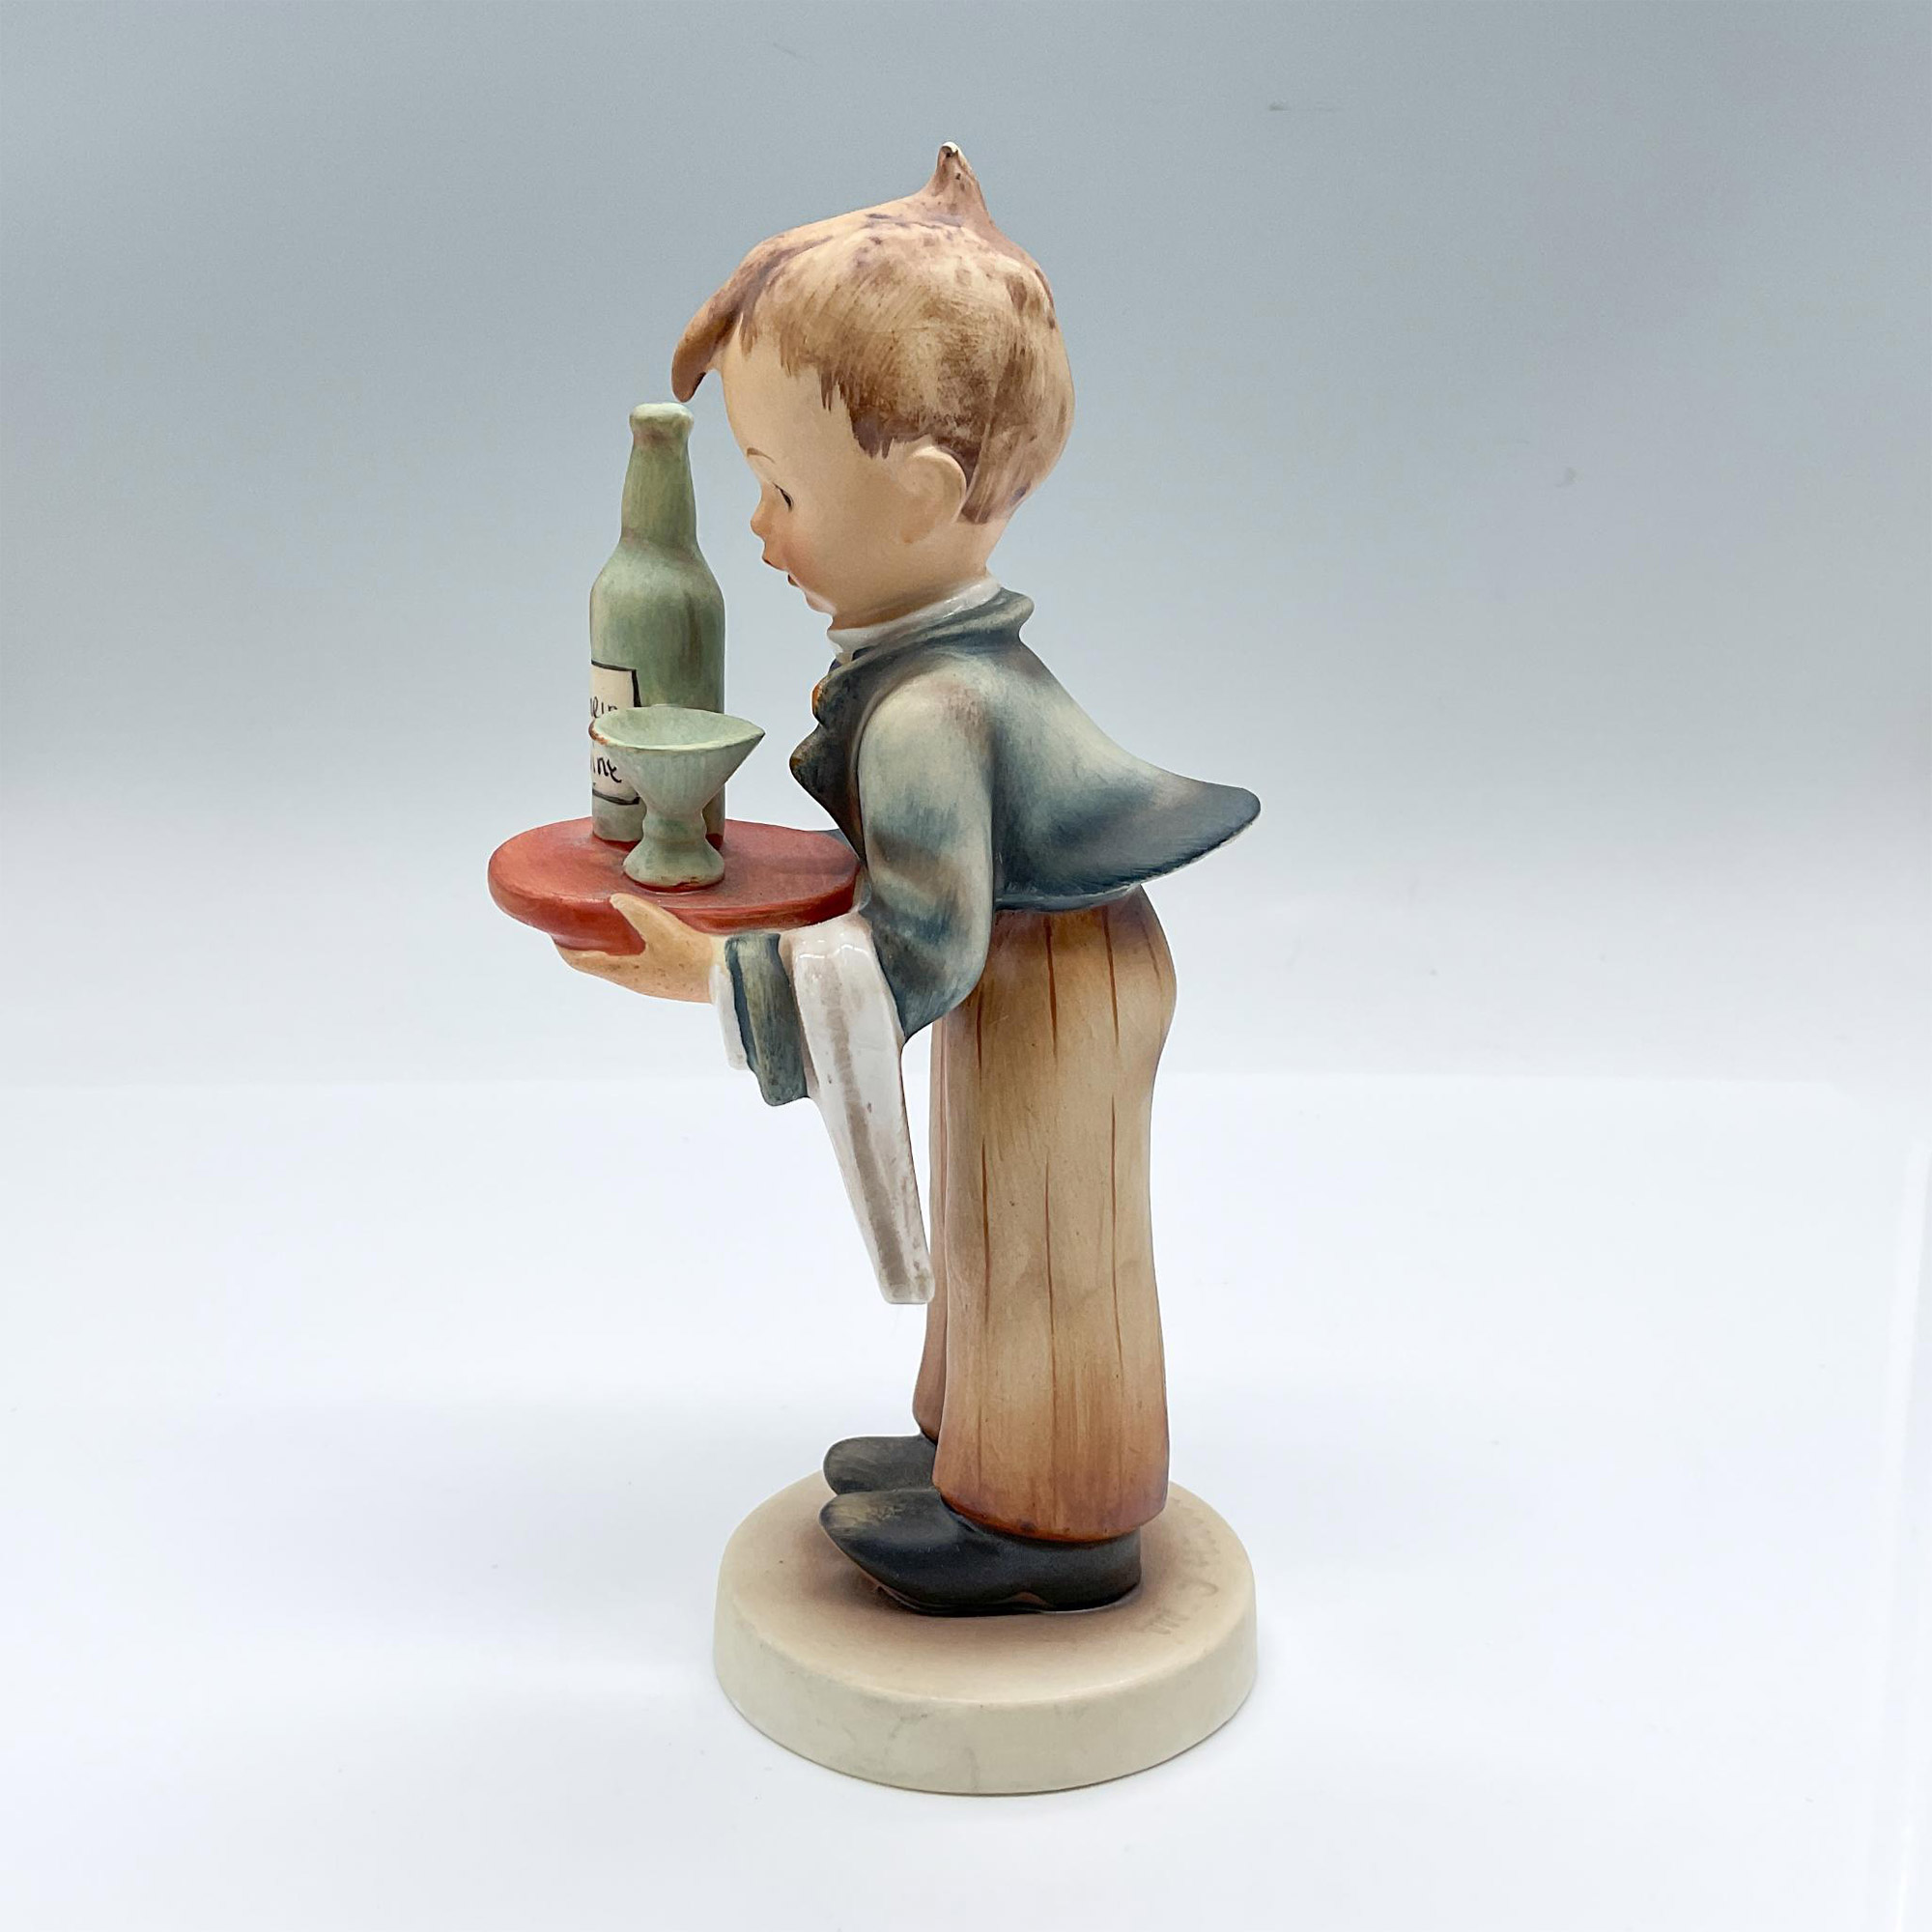 Goebel Hummel Porcelain Figurine, Waiter Boy - Image 3 of 4